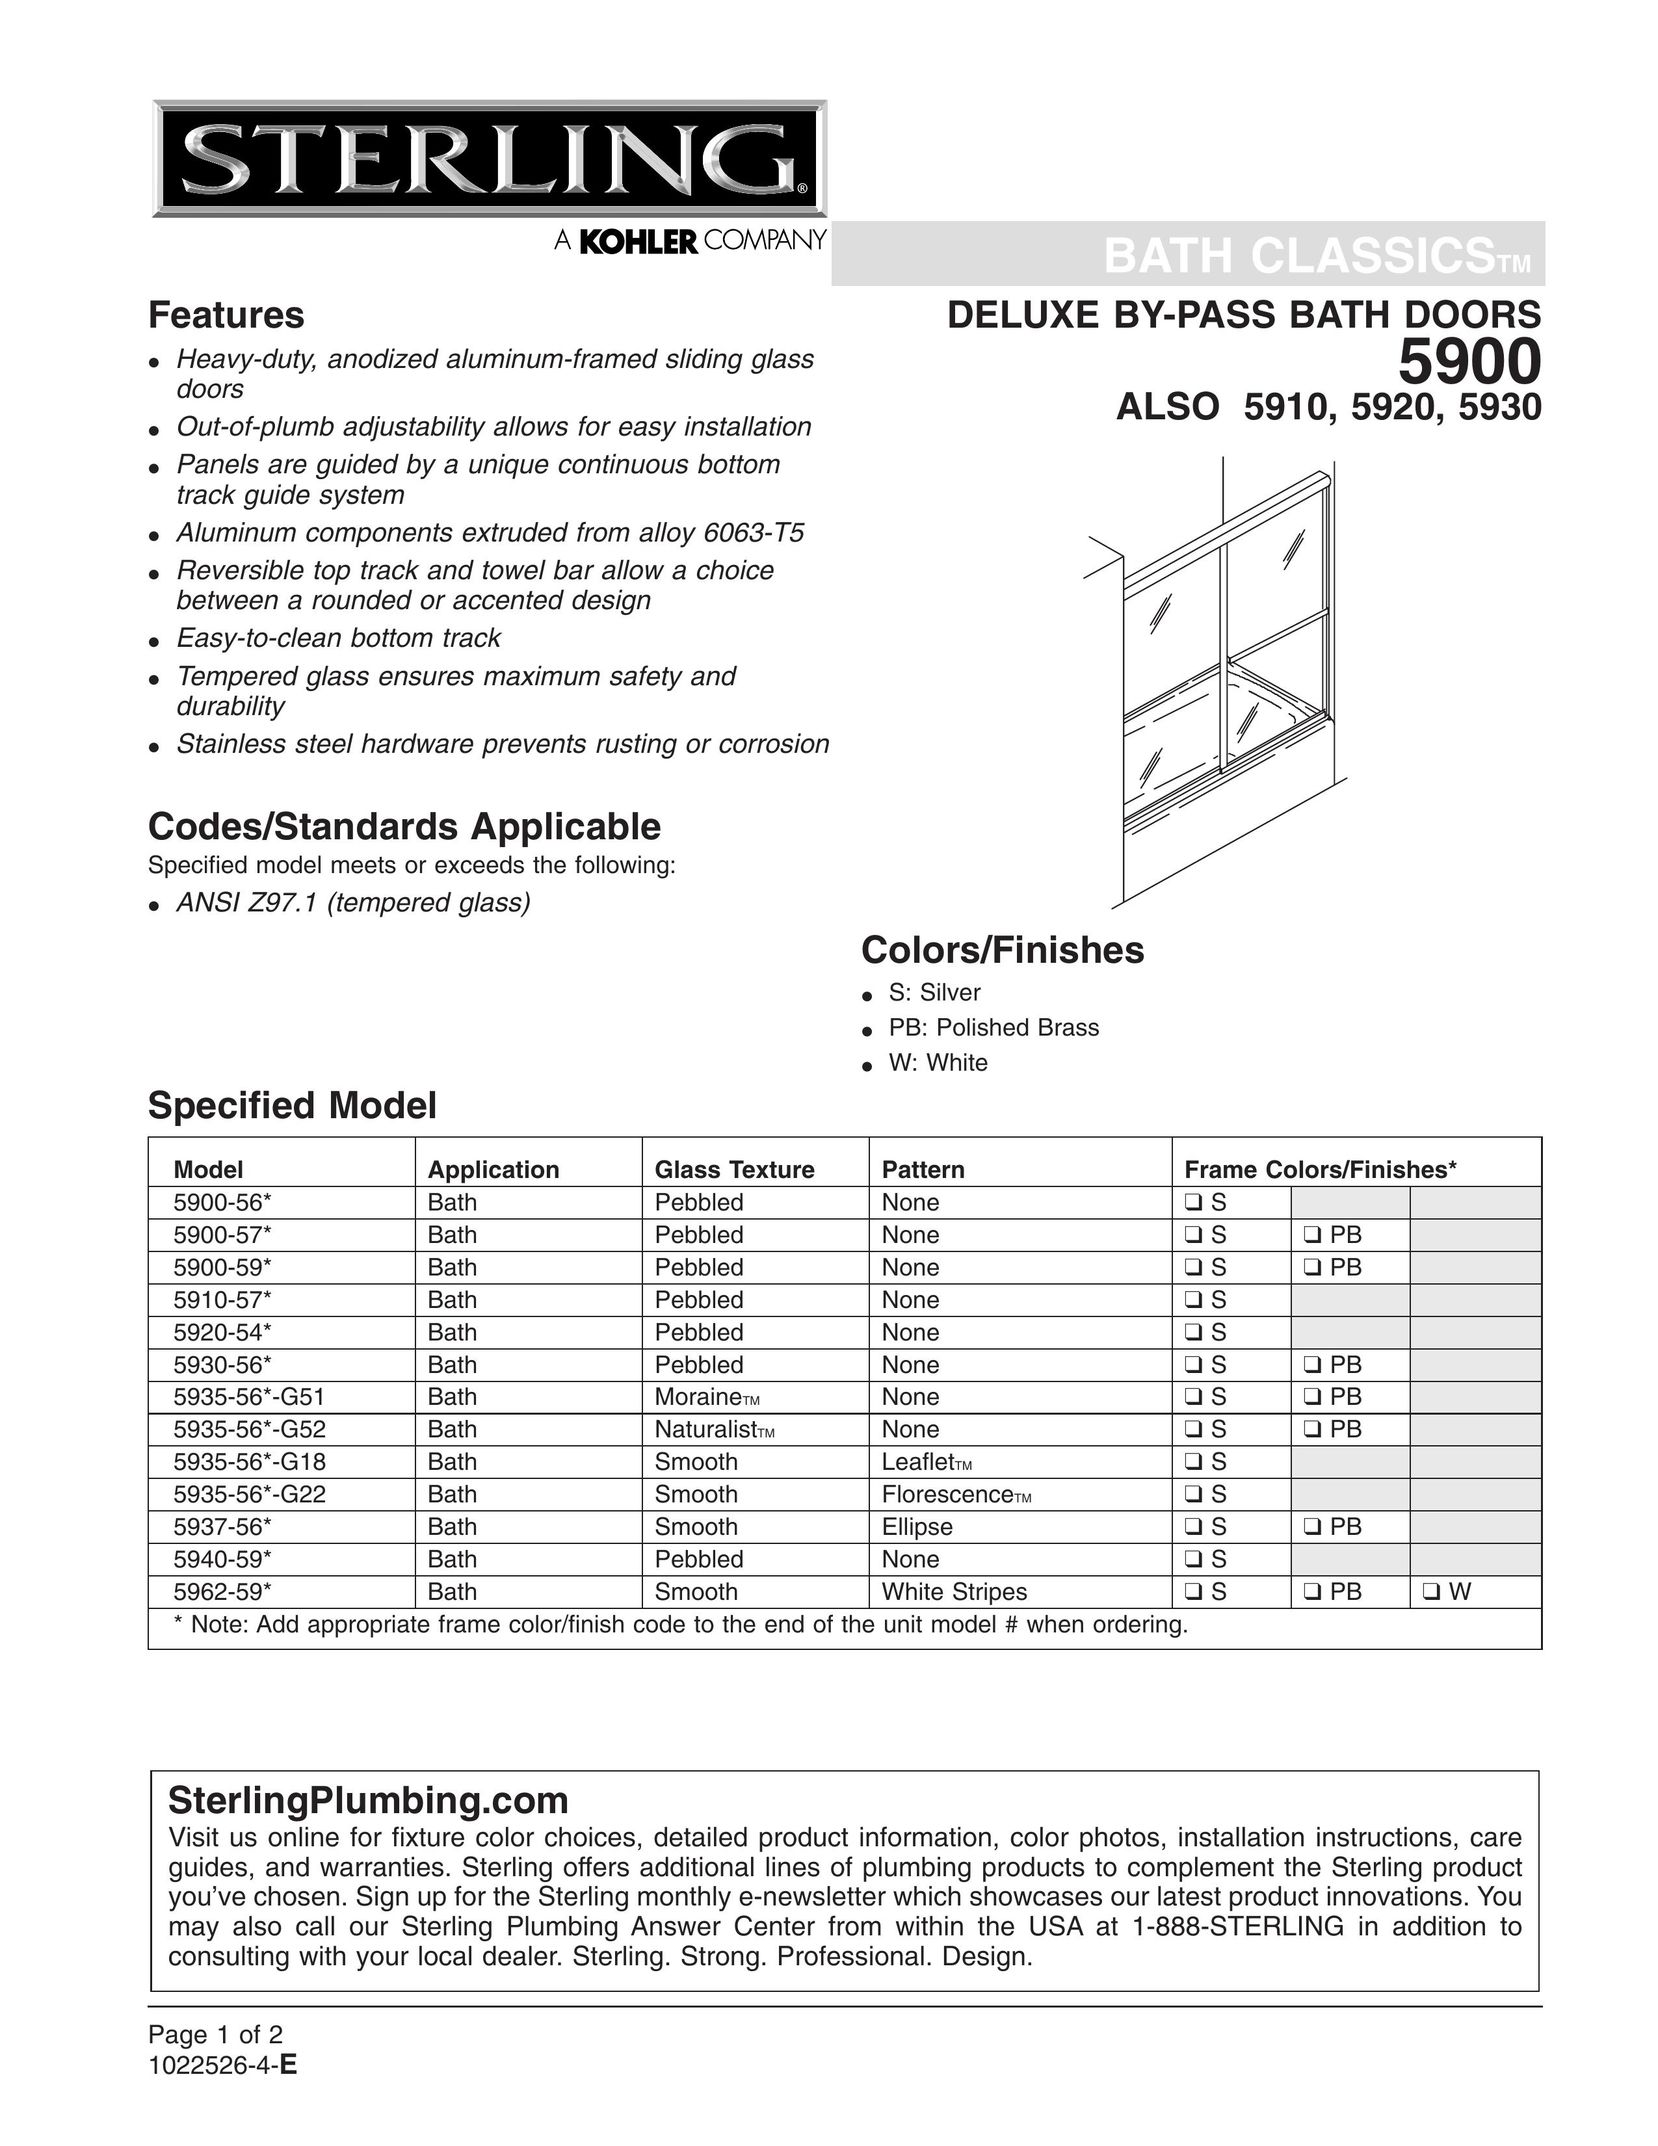 Sterling Plumbing 5935-56*-G18 Door User Manual